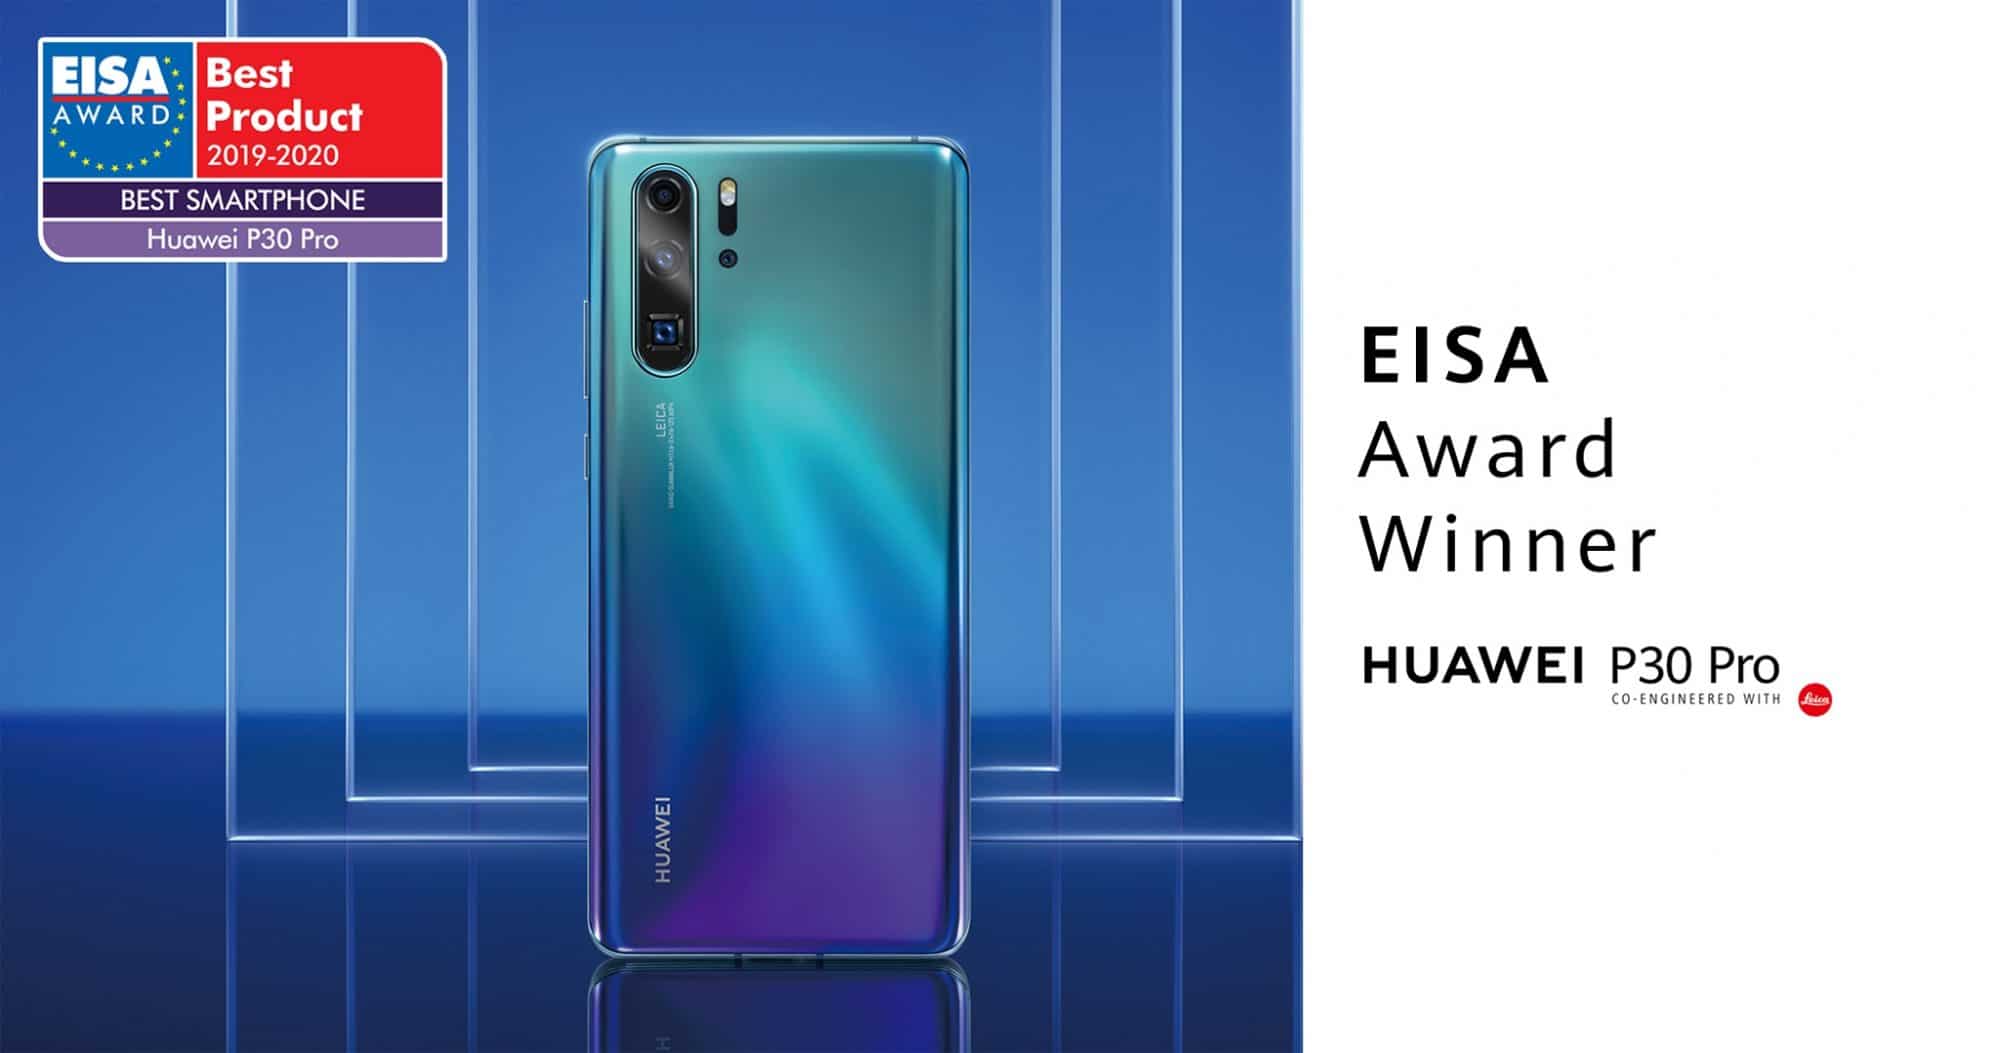 สมาคมภาพและเสียงแห่งยุโรป (EISA) เลือกให้ HUAWEI P30 Pro เป็นสมาร์ทโฟนยอดเยี่ยมประจำปี 2019-2020 1